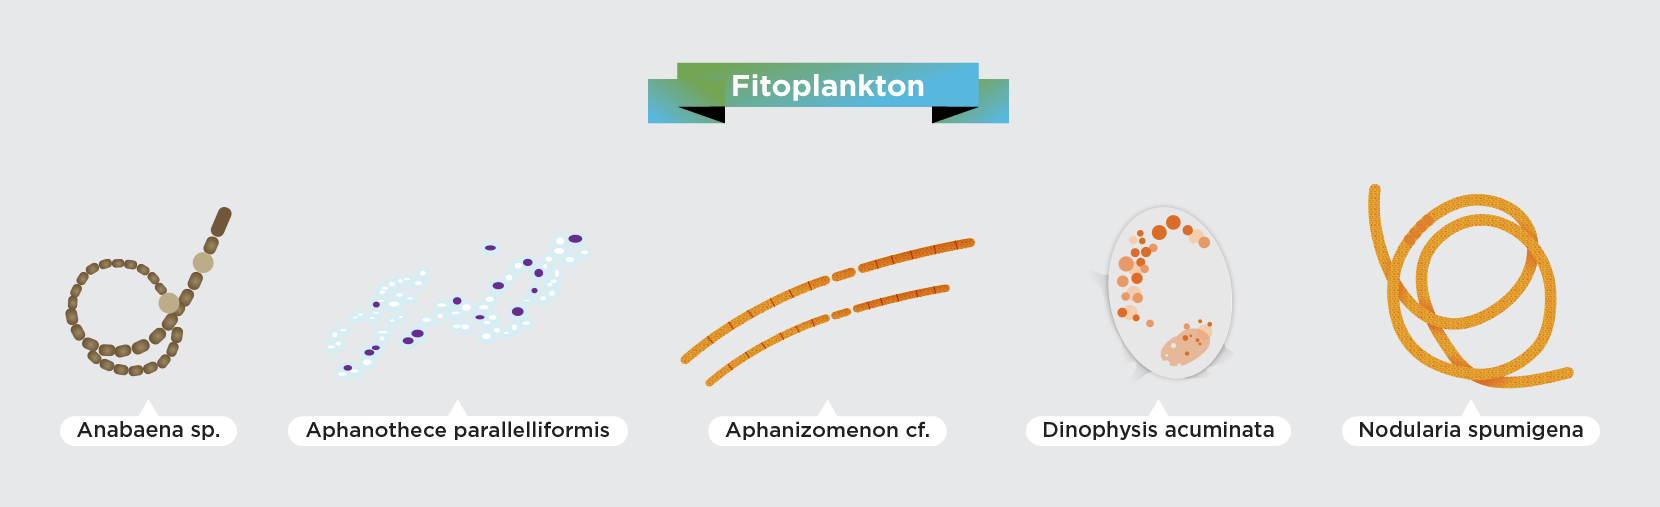 Phytoplankton – das sind pflanzliche Organismen in der Ostsee